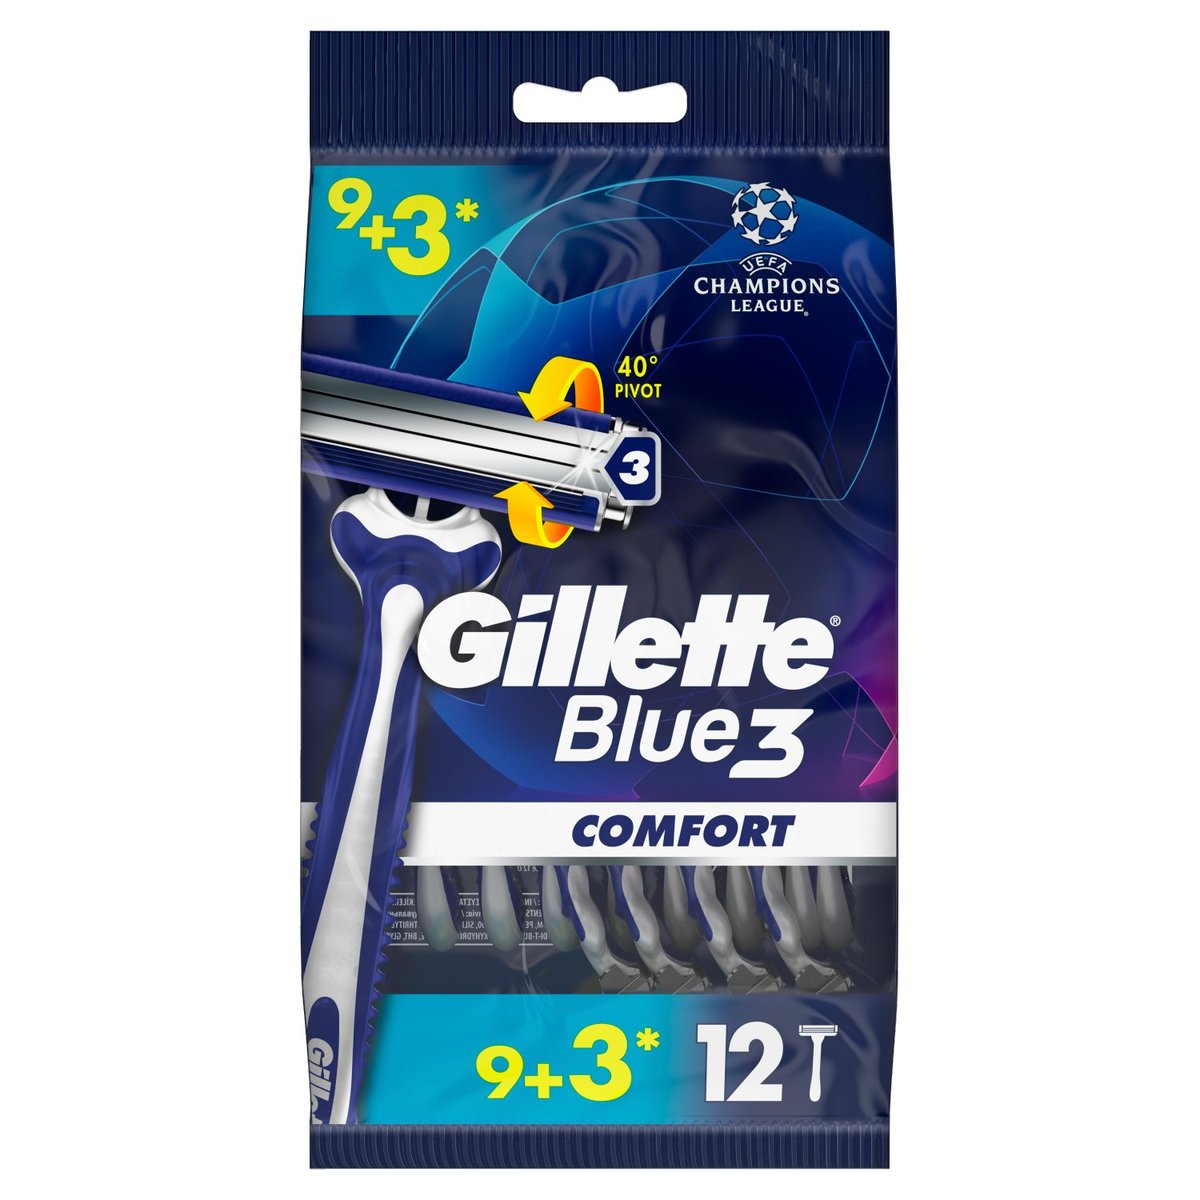 Gillette Blue3 SenseCare Jednorazowe maszynki do golenia, 12 szt.